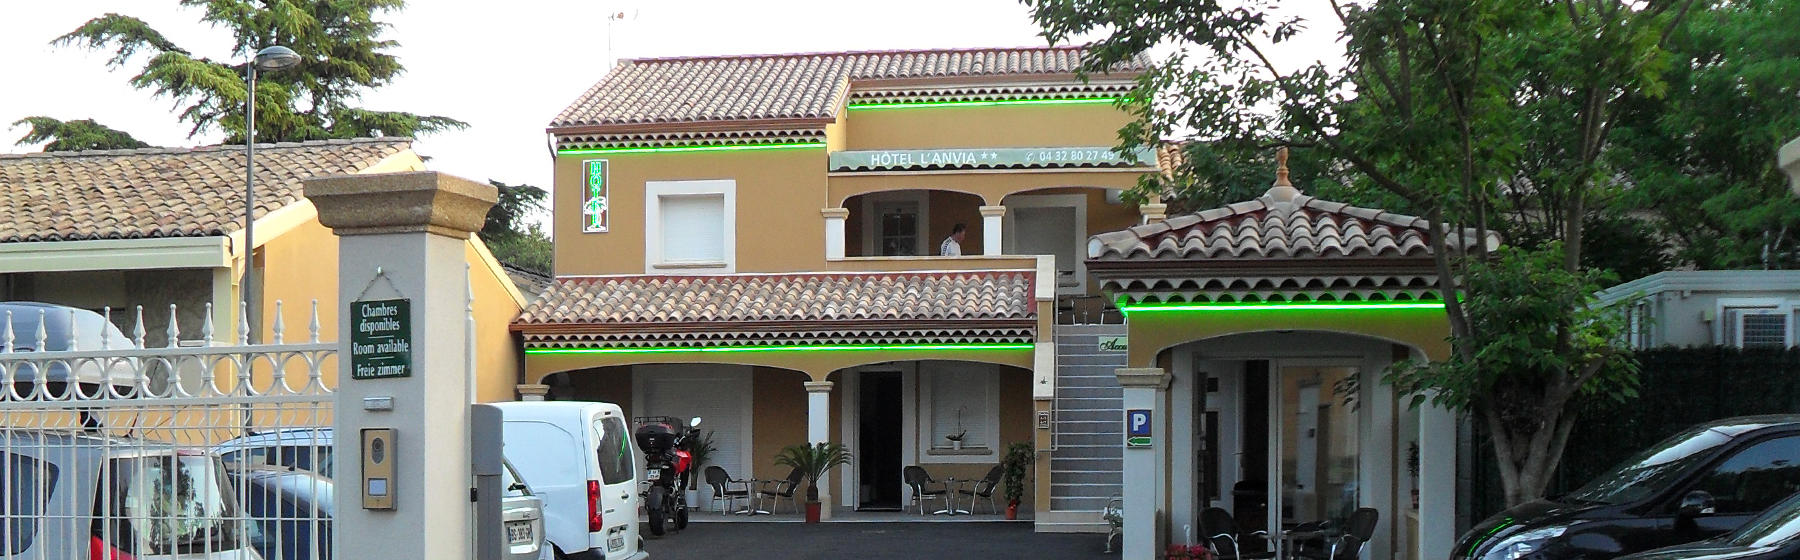 L'hôtel l'Anvia moderne et confortable à Bollène, Provence